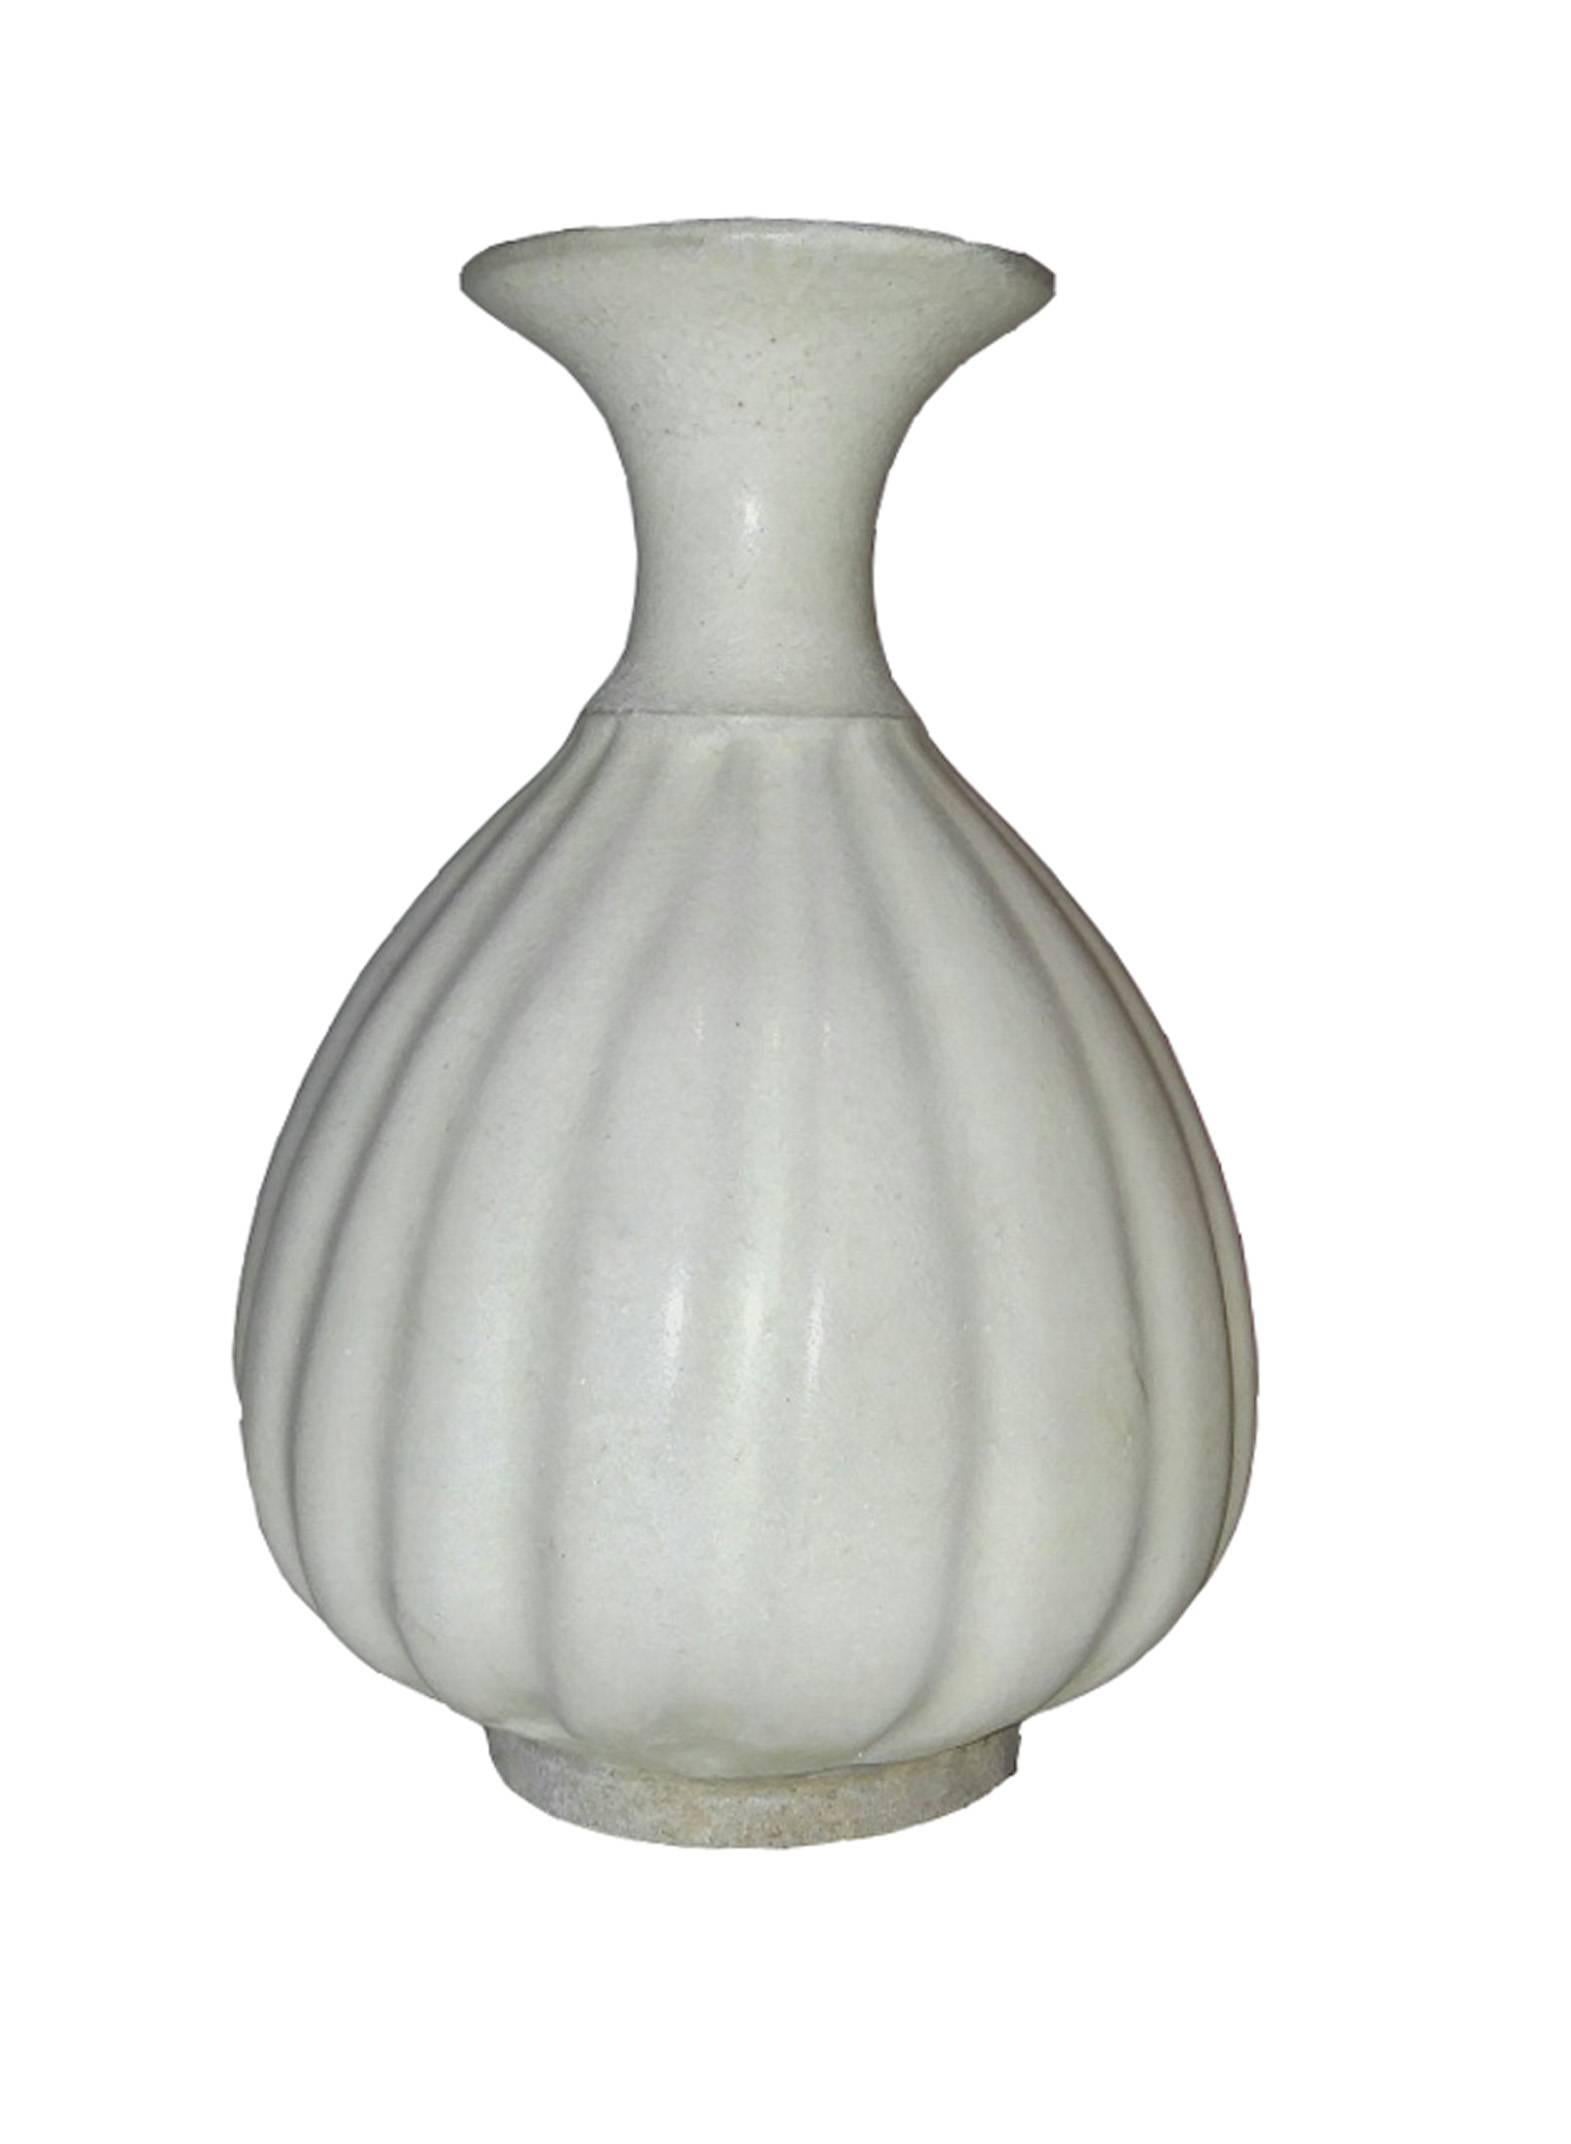 Glazed Ceramic Vase in White Glaze